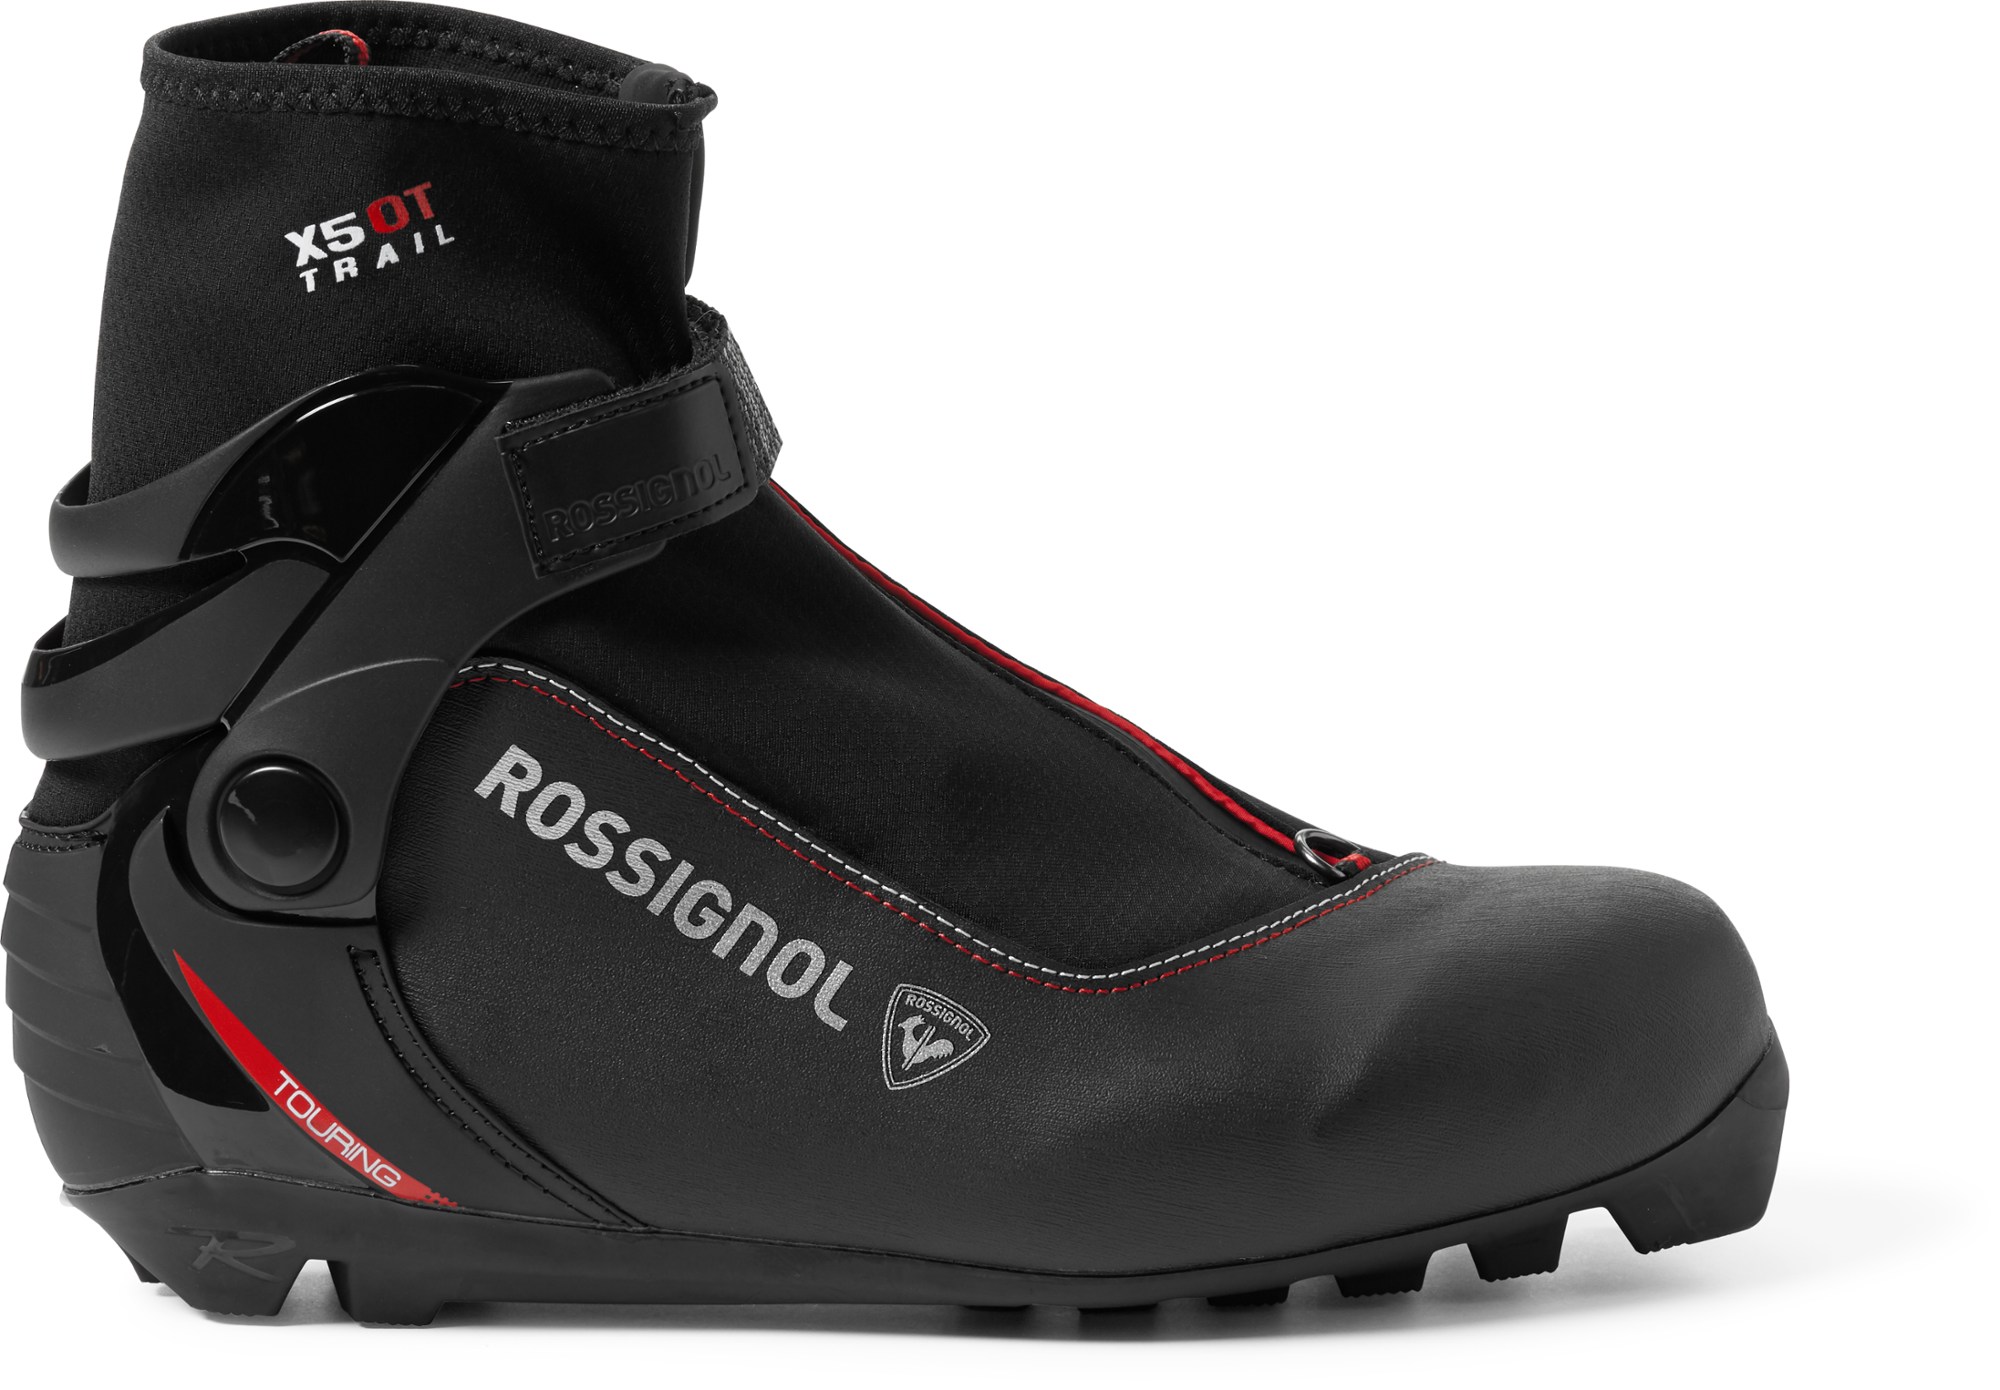 Ботинки для беговых лыж X-5 OT — мужские Rossignol, черный